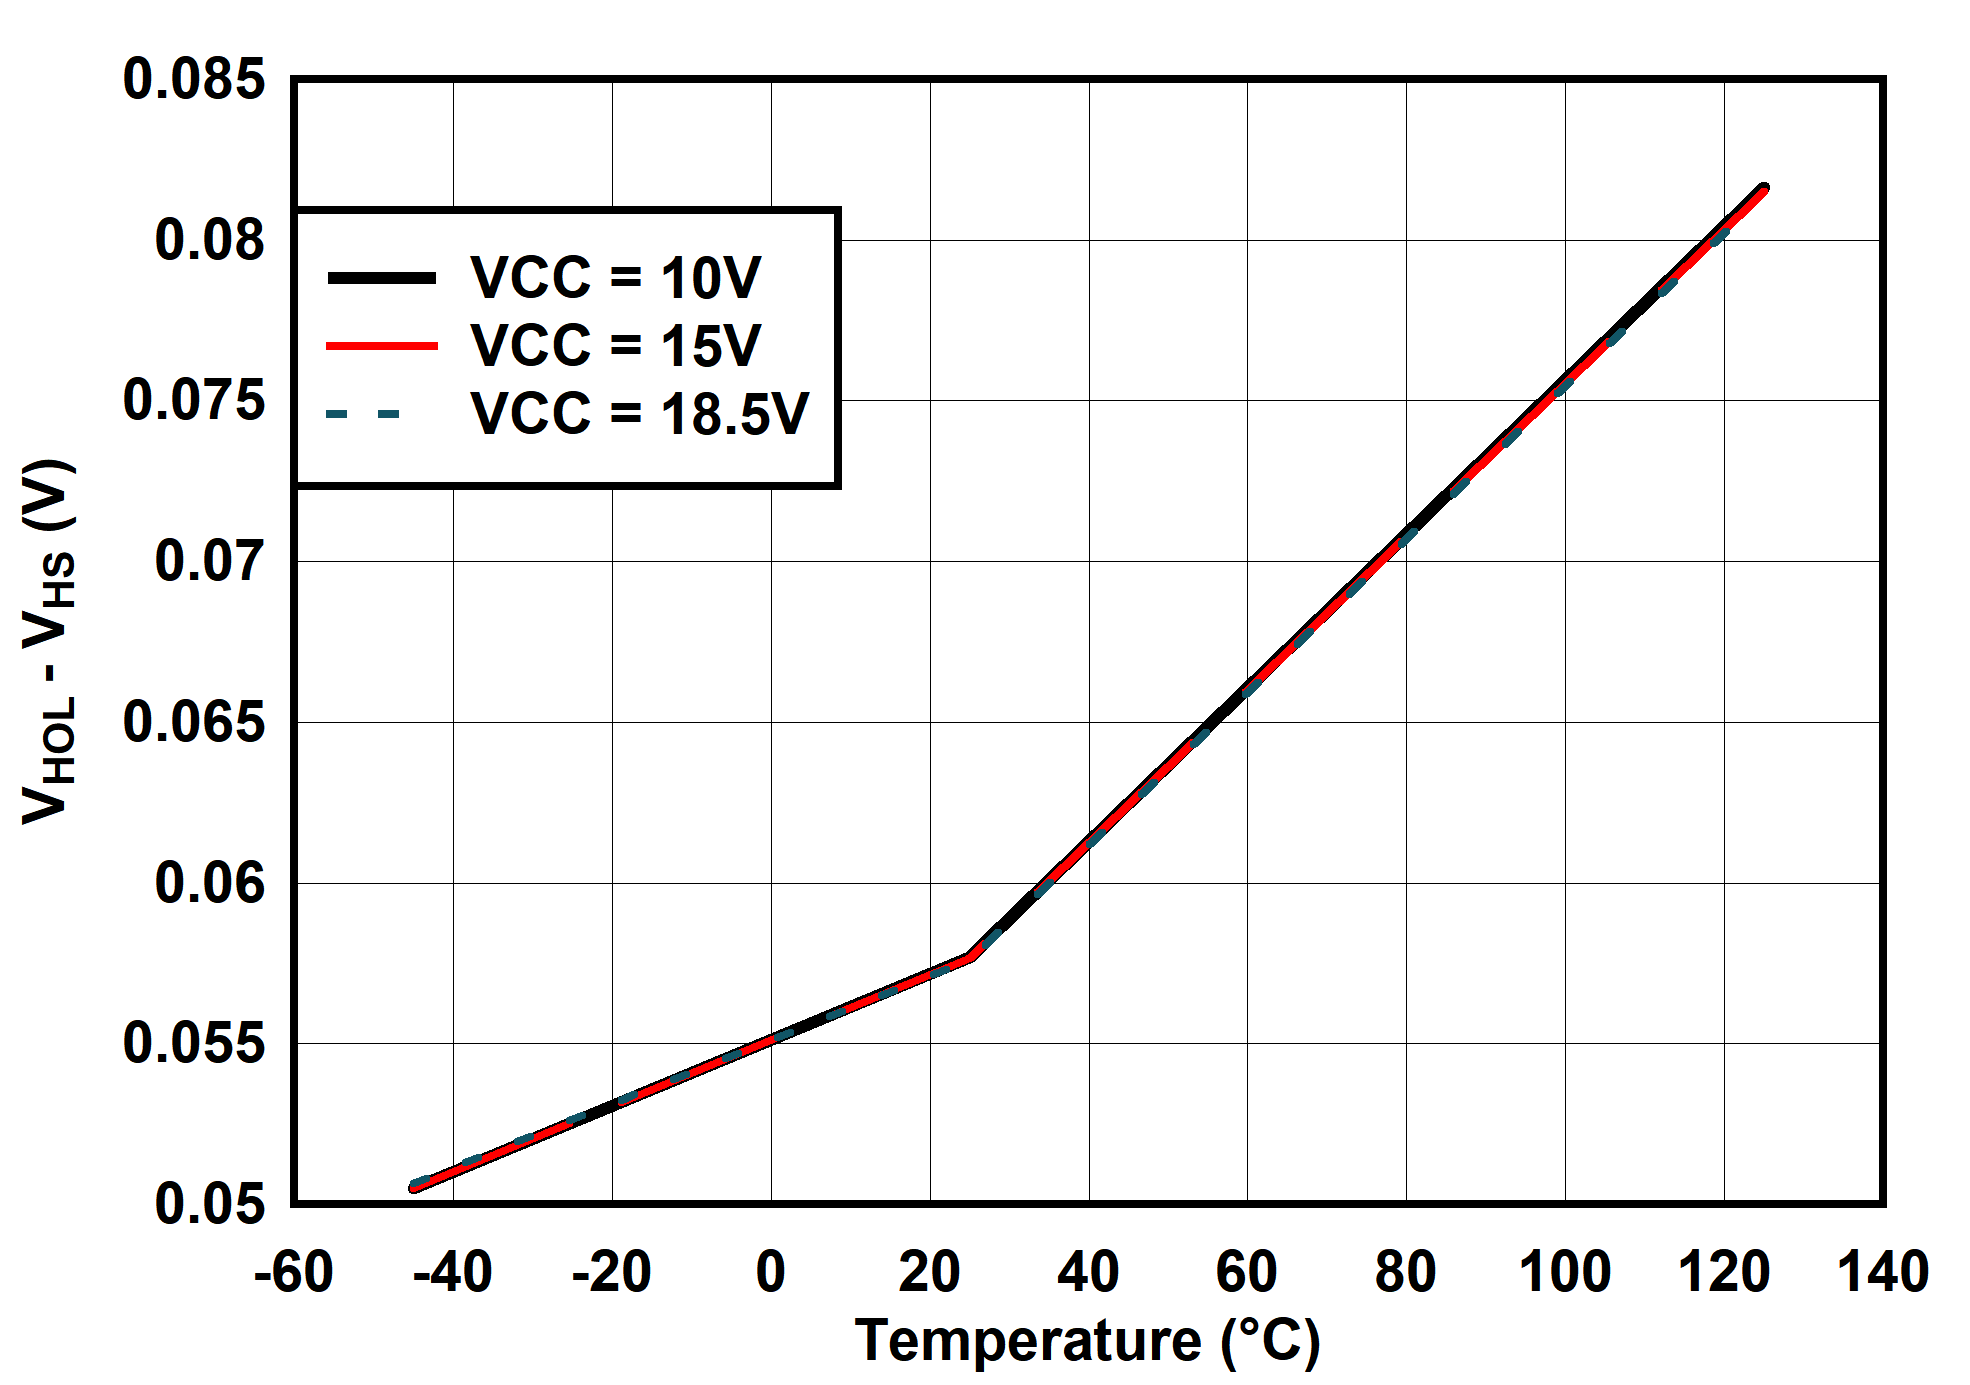 UCC25660 (VHOL- VHS) vs Temperature